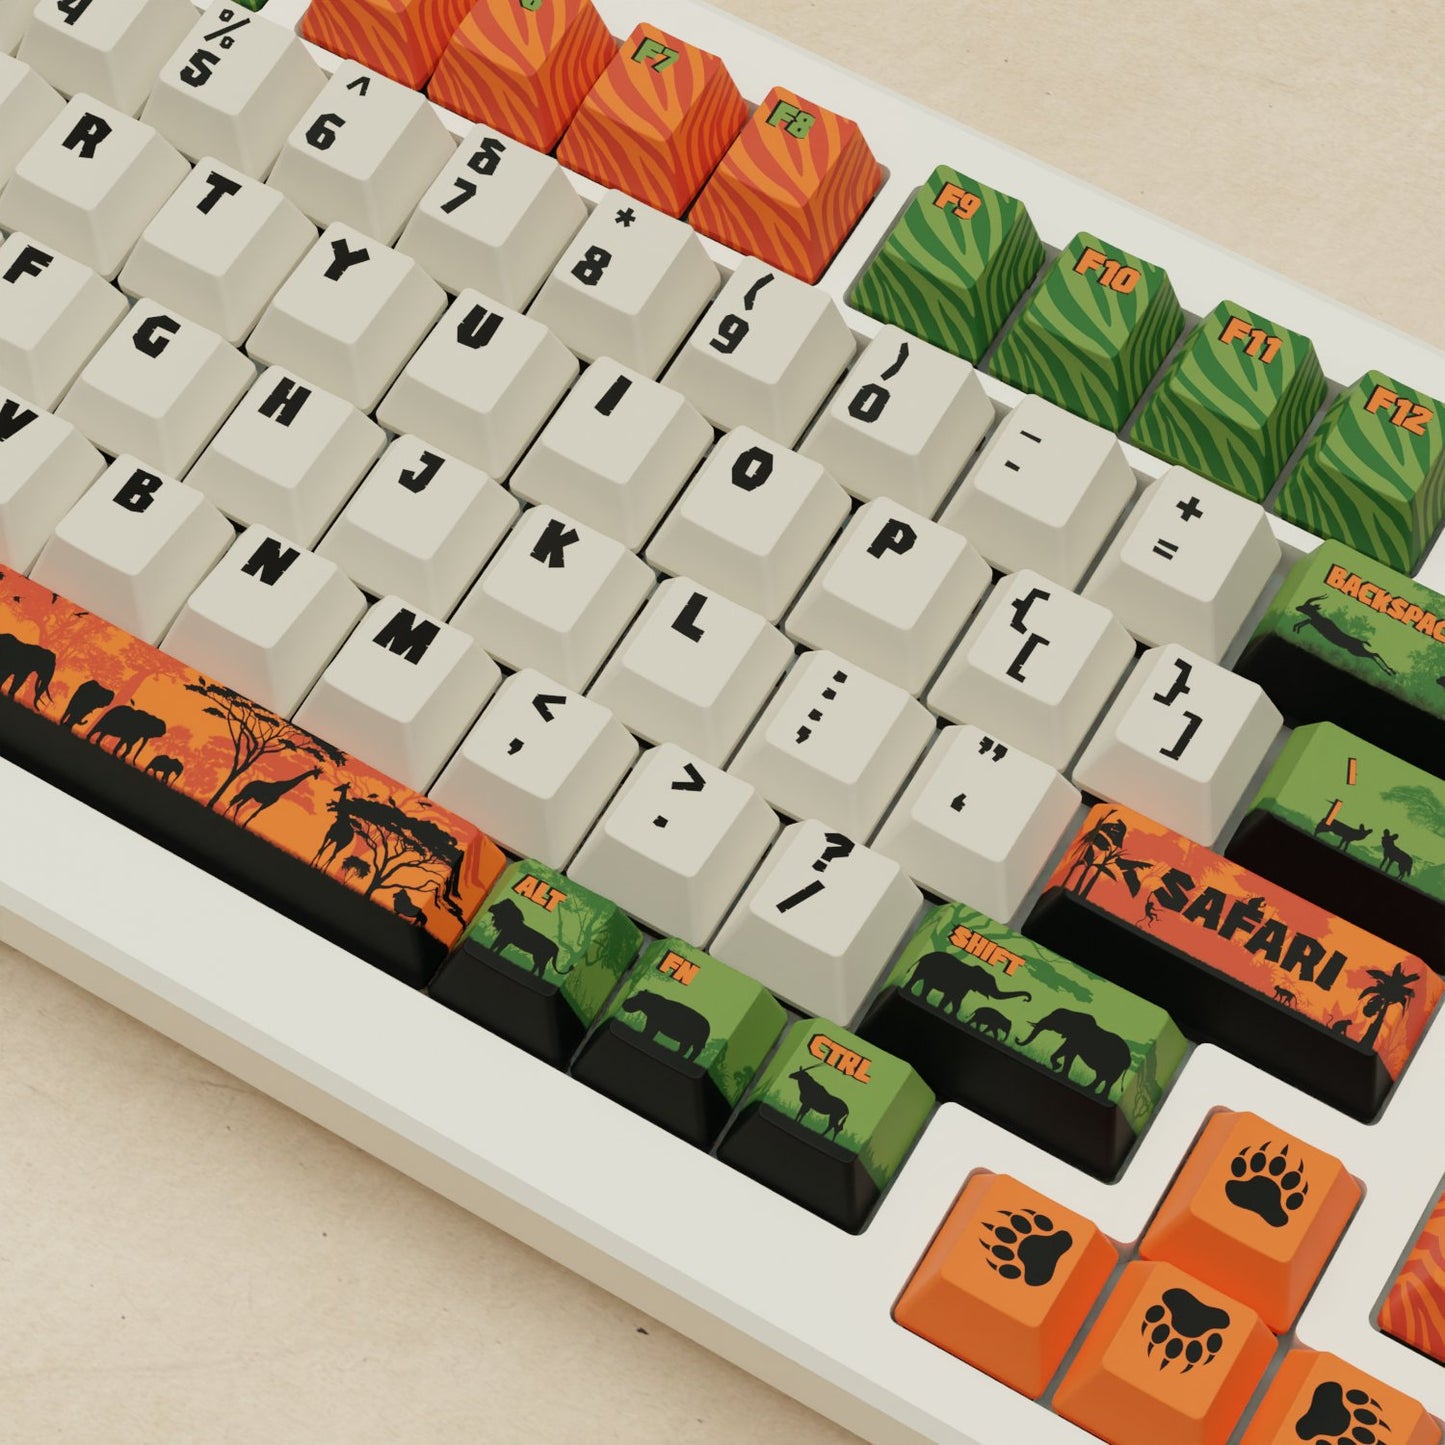 Alpha 82 - 75% Safari Mechanical Keyboard - Goblintechkeys